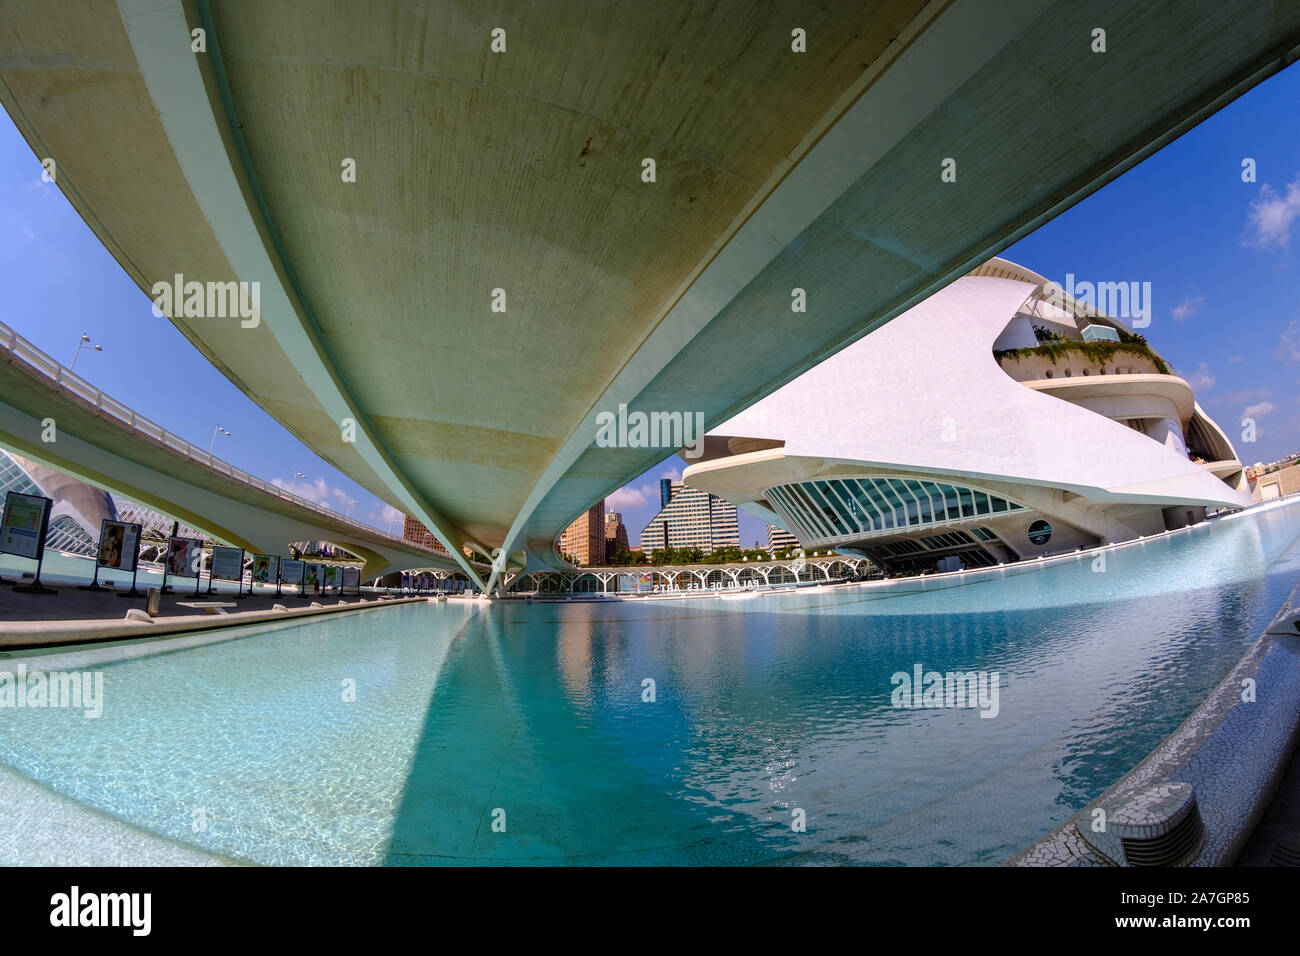 El Palau de les Arts Reina Sofia, der von dem Architekten Santiago Calatrava, der Stadt der Künste und Wissenschaften in Valencia, Spanien (Fischaugenobjektiv) Stockfoto